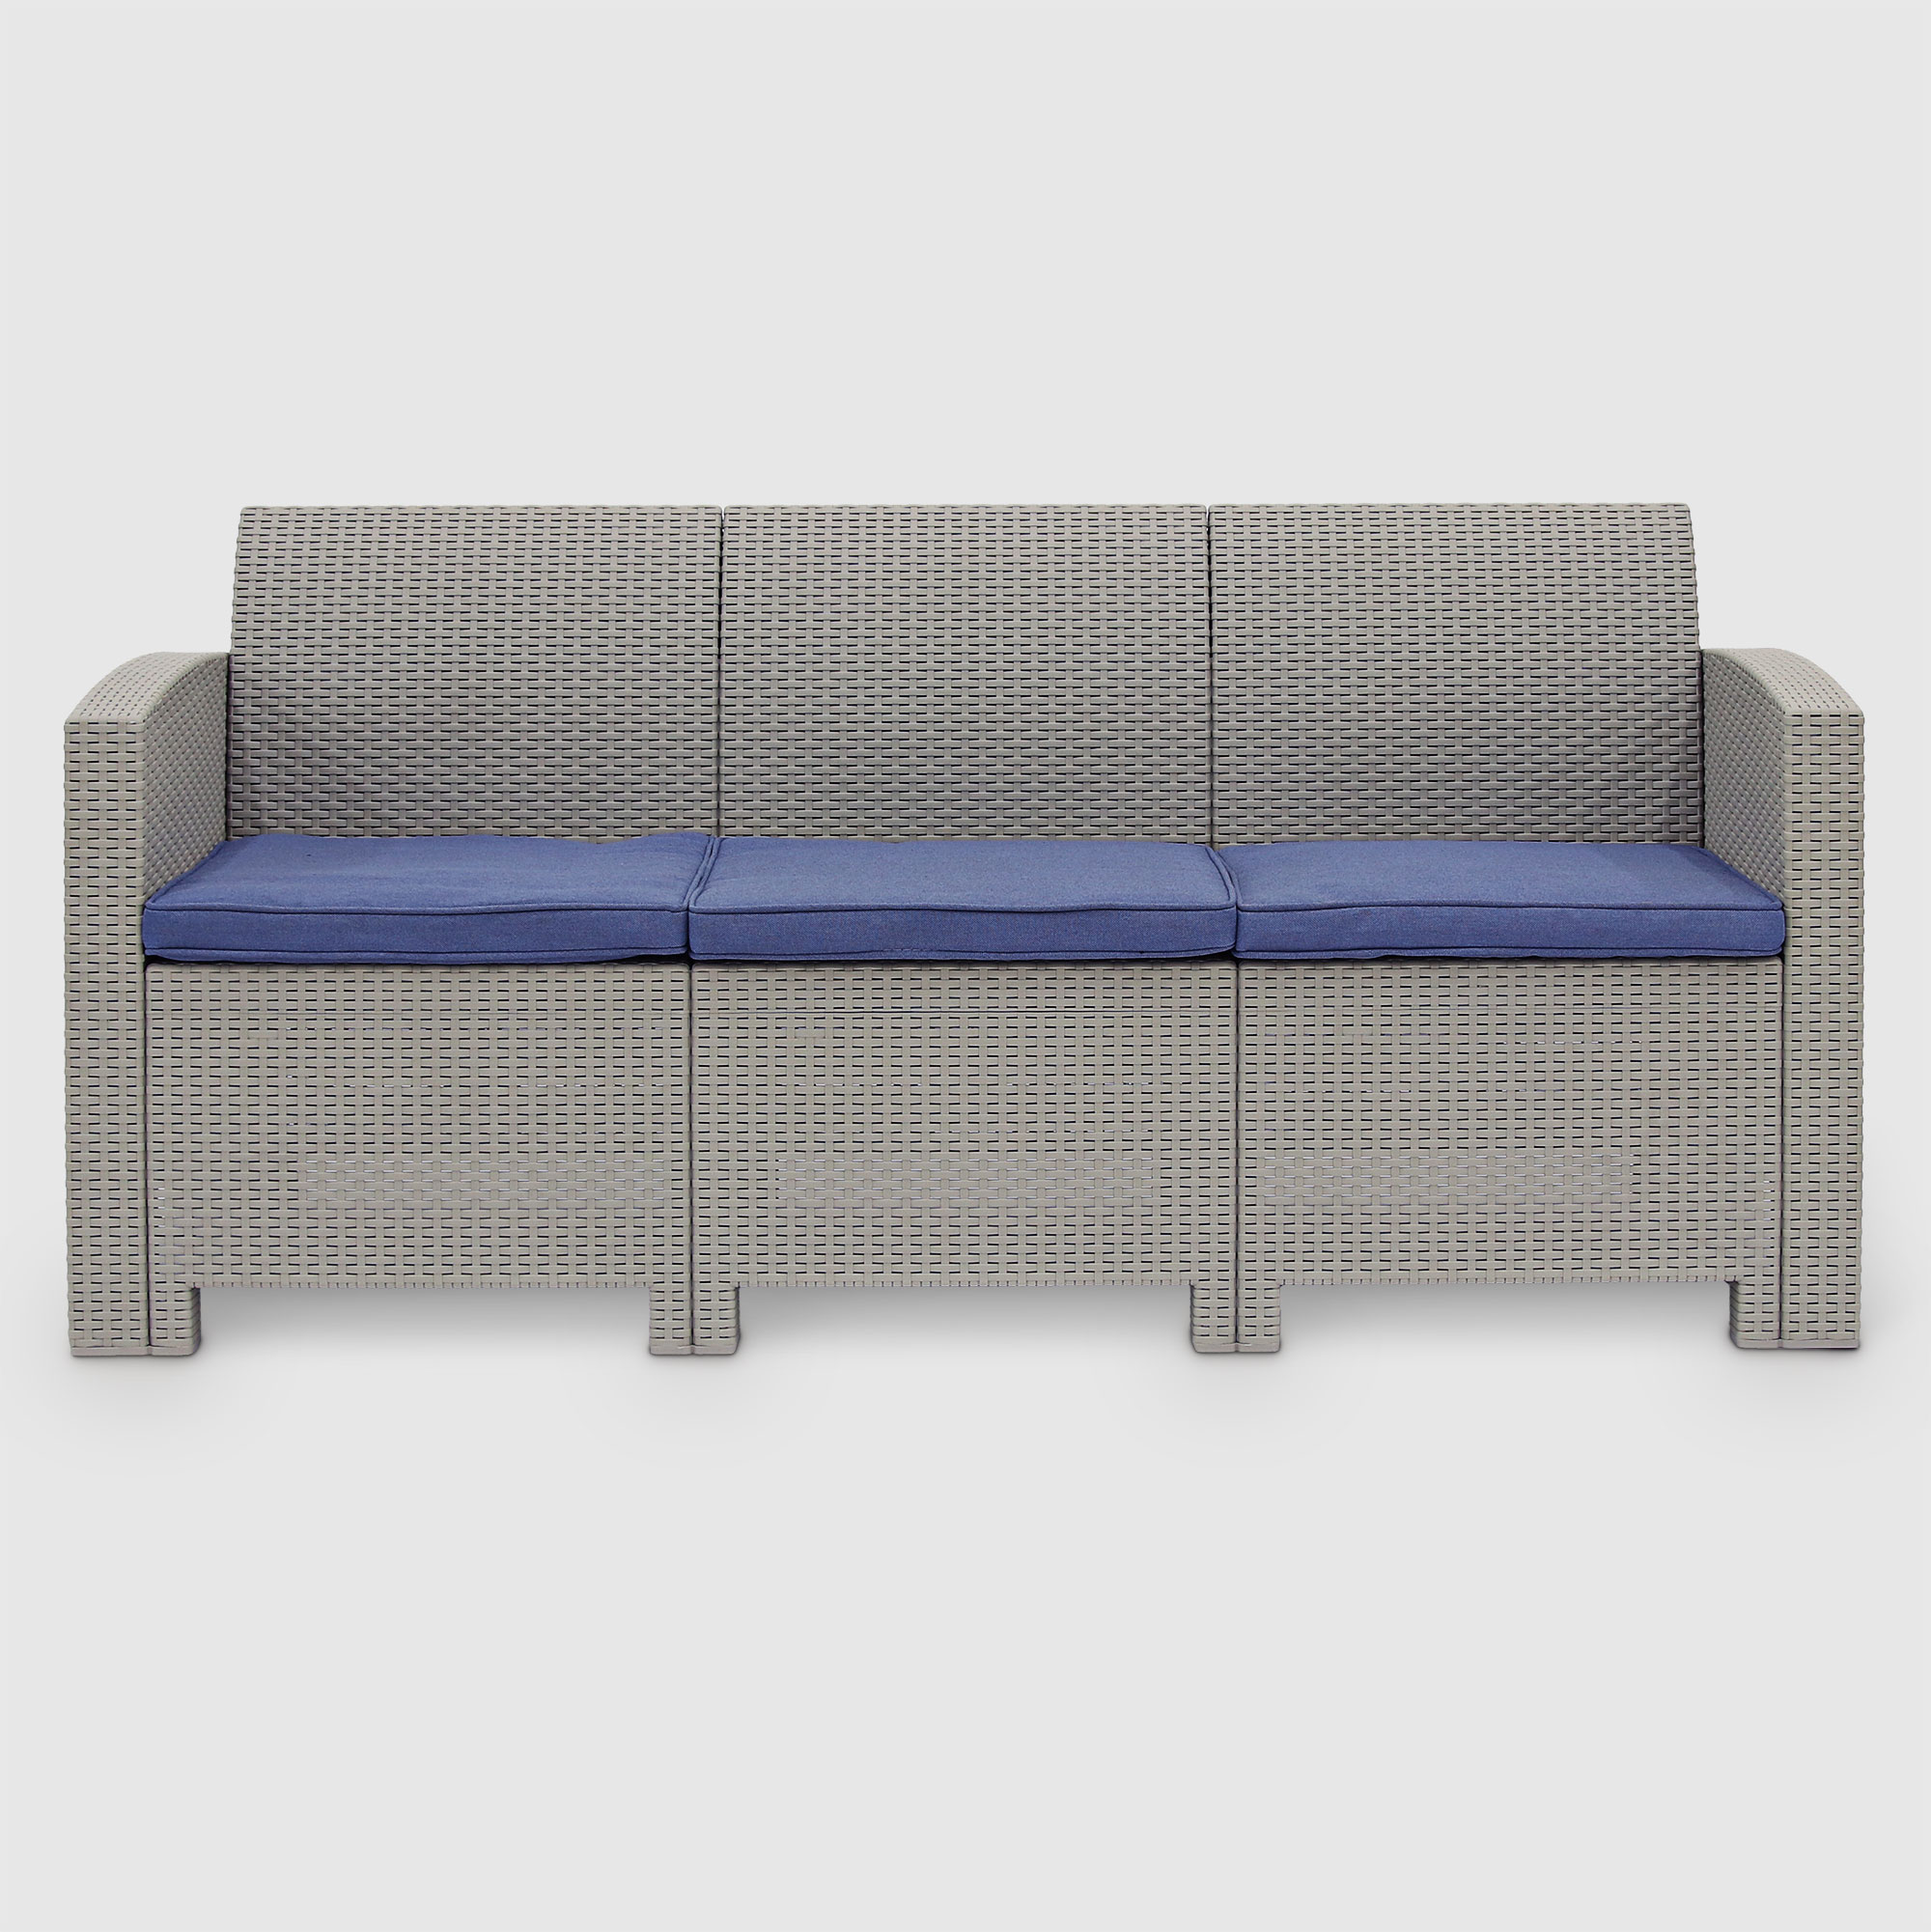 Комплект садовой мебели LF серый с синим из 4 пердметов, цвет синий, размер 172х61х76 - фото 3